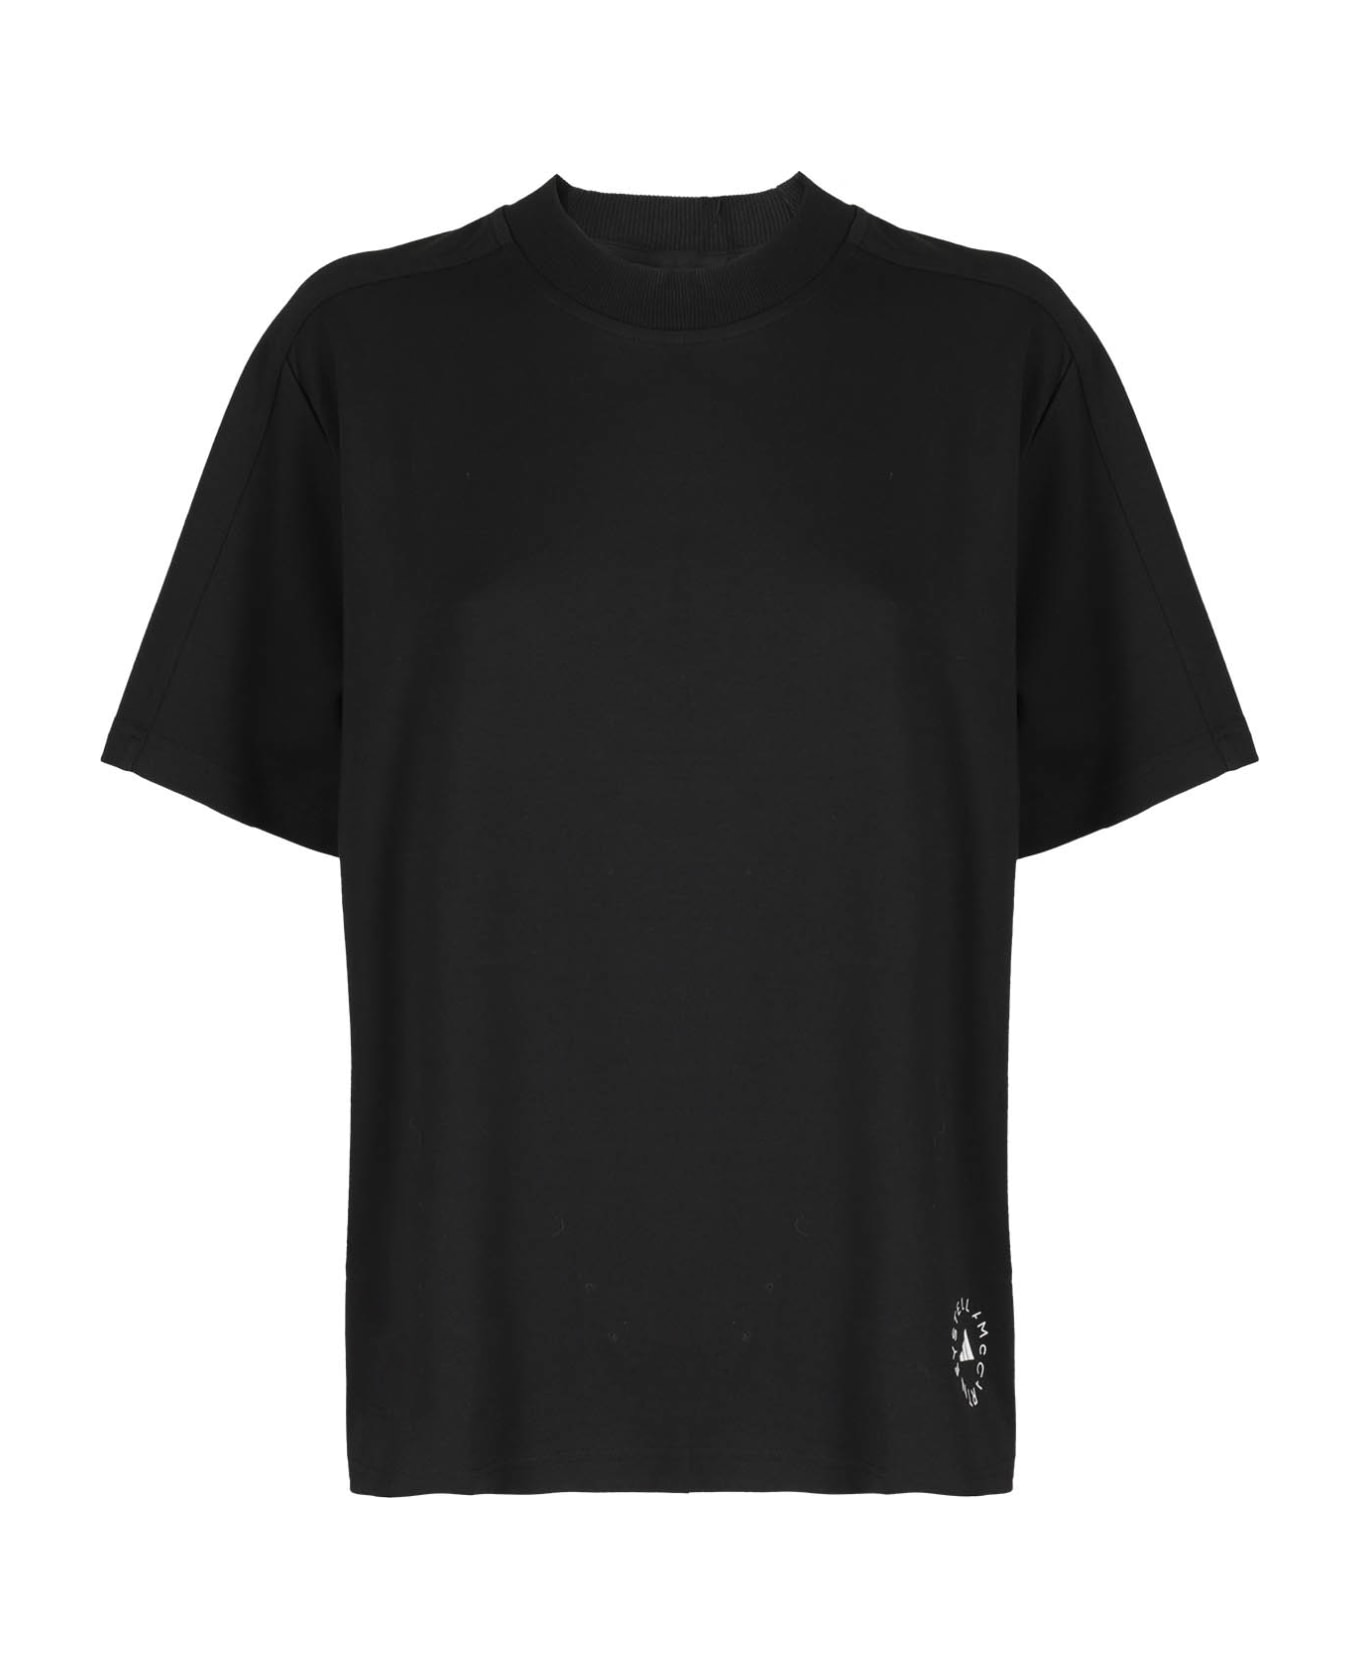 Adidas by Stella McCartney By Stella Mccartney Logo T-shirt - BLACK